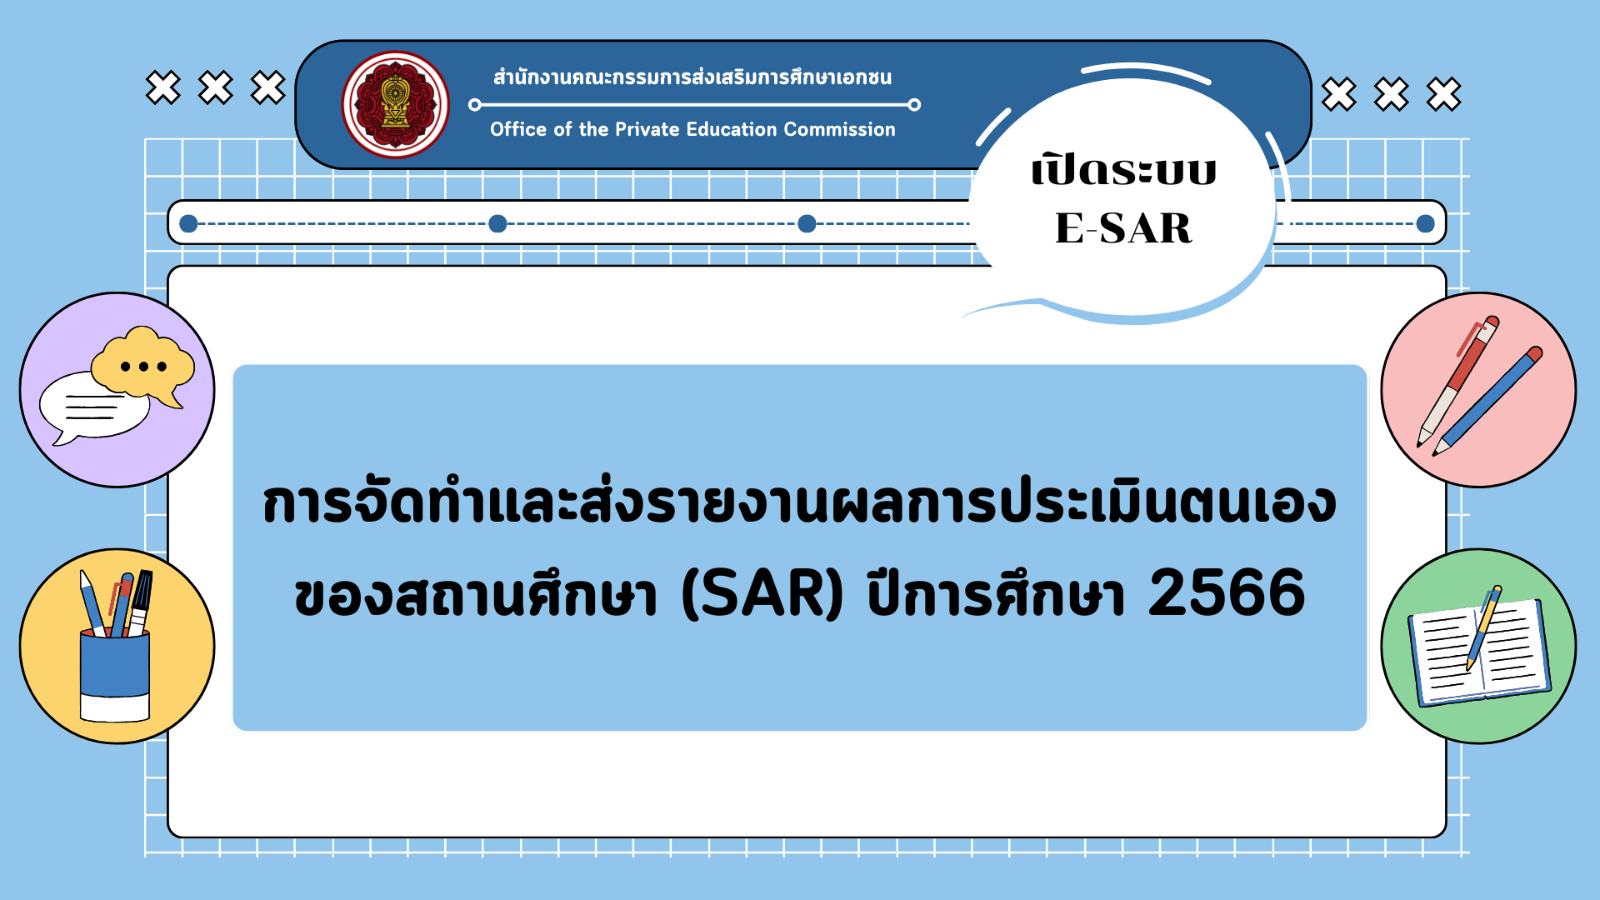 การจัดทำและส่งรายงานผลการประเมินตนเองของสถานศึกษา (SAR) ปีการศึกษา 2566